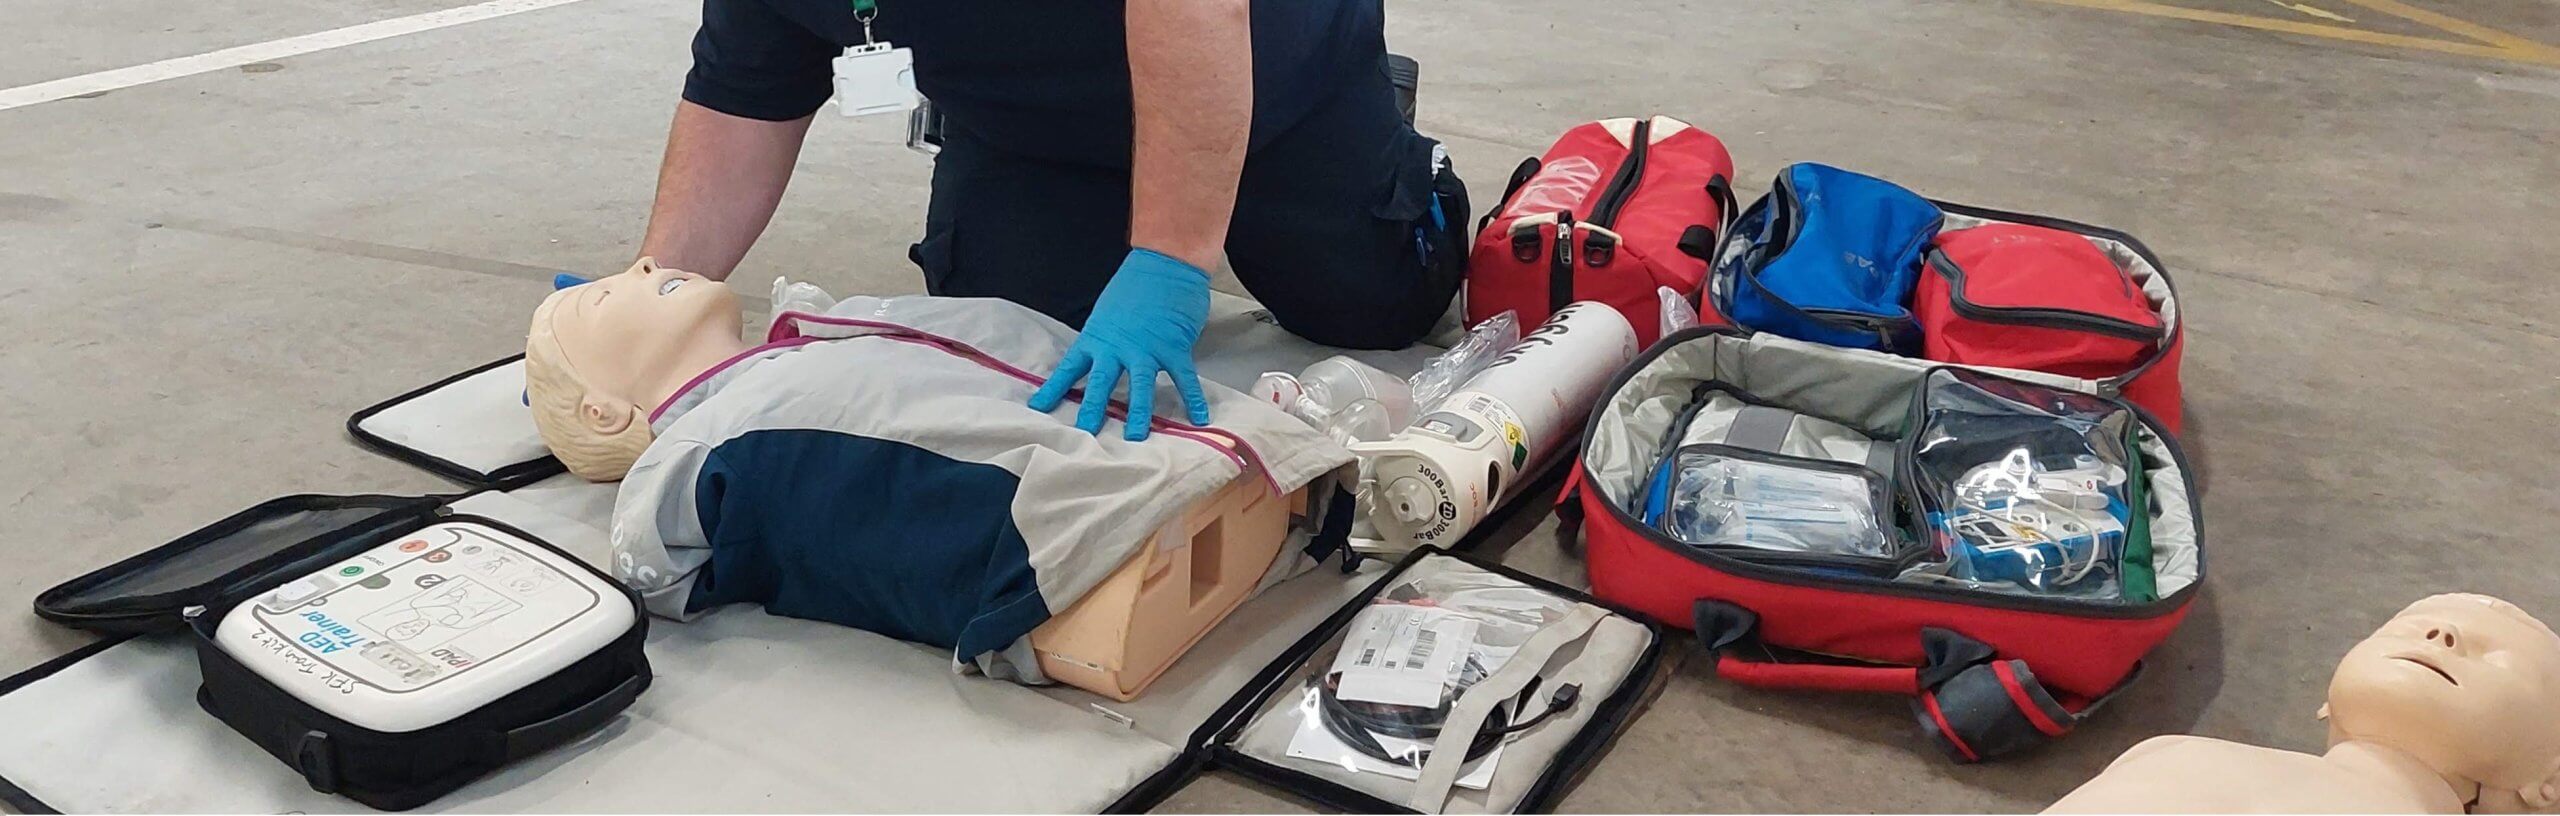 FREC3 FREC4 First Aid At Work Training Ambulance Medic Training First Aid Training UK. 